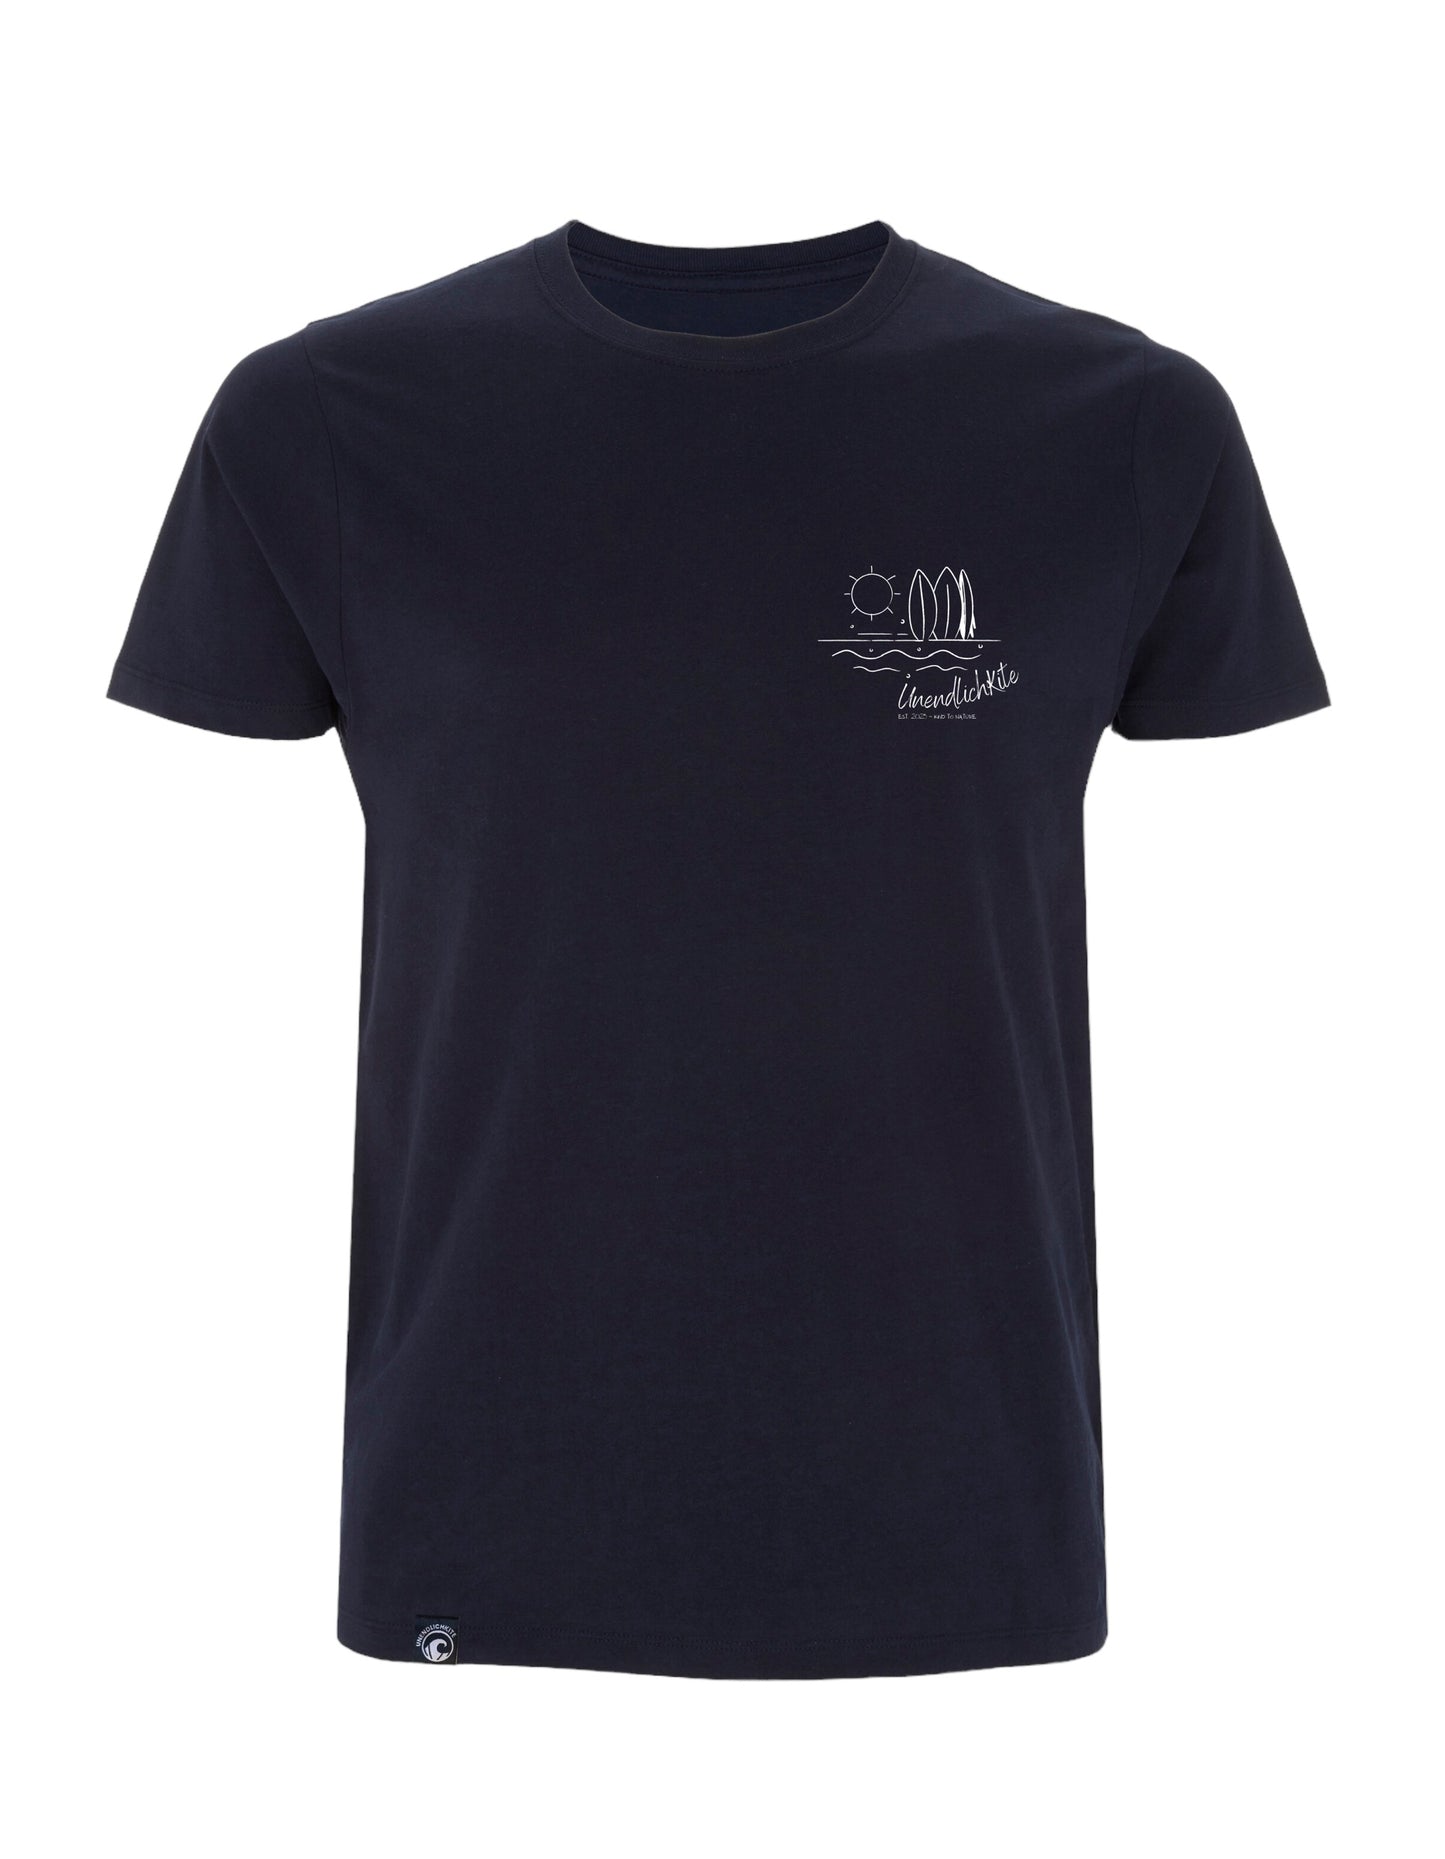 dunkelblaues T-Shirt mit Brustaufdruck Zeichnung Sonne und Boads